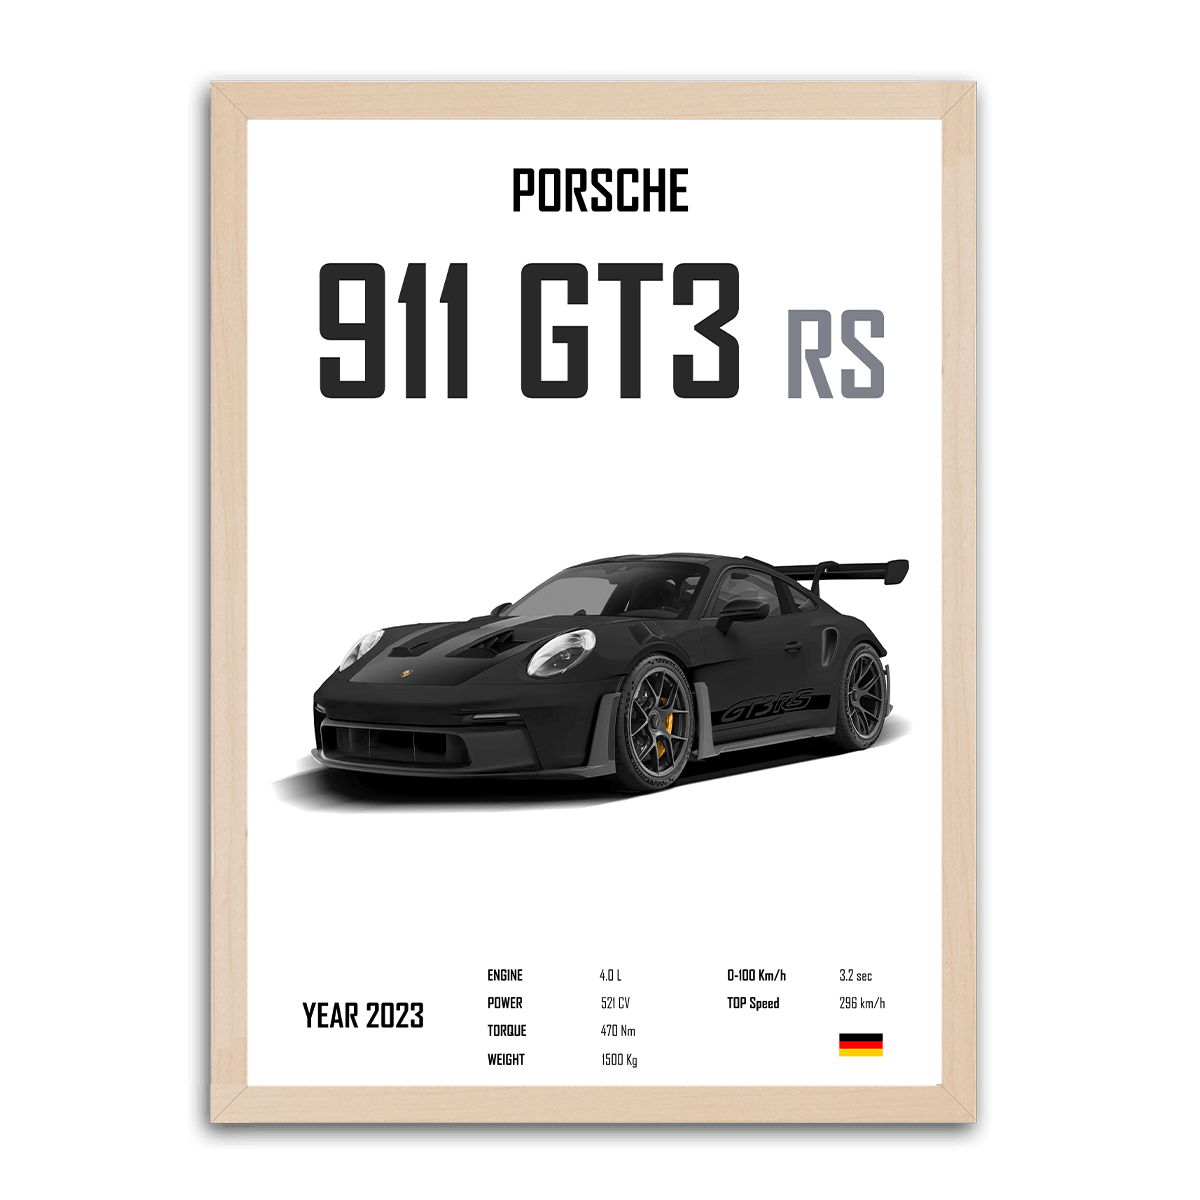 Porsche 911 GT3 RS Black- HD Metal Print - PixMagic